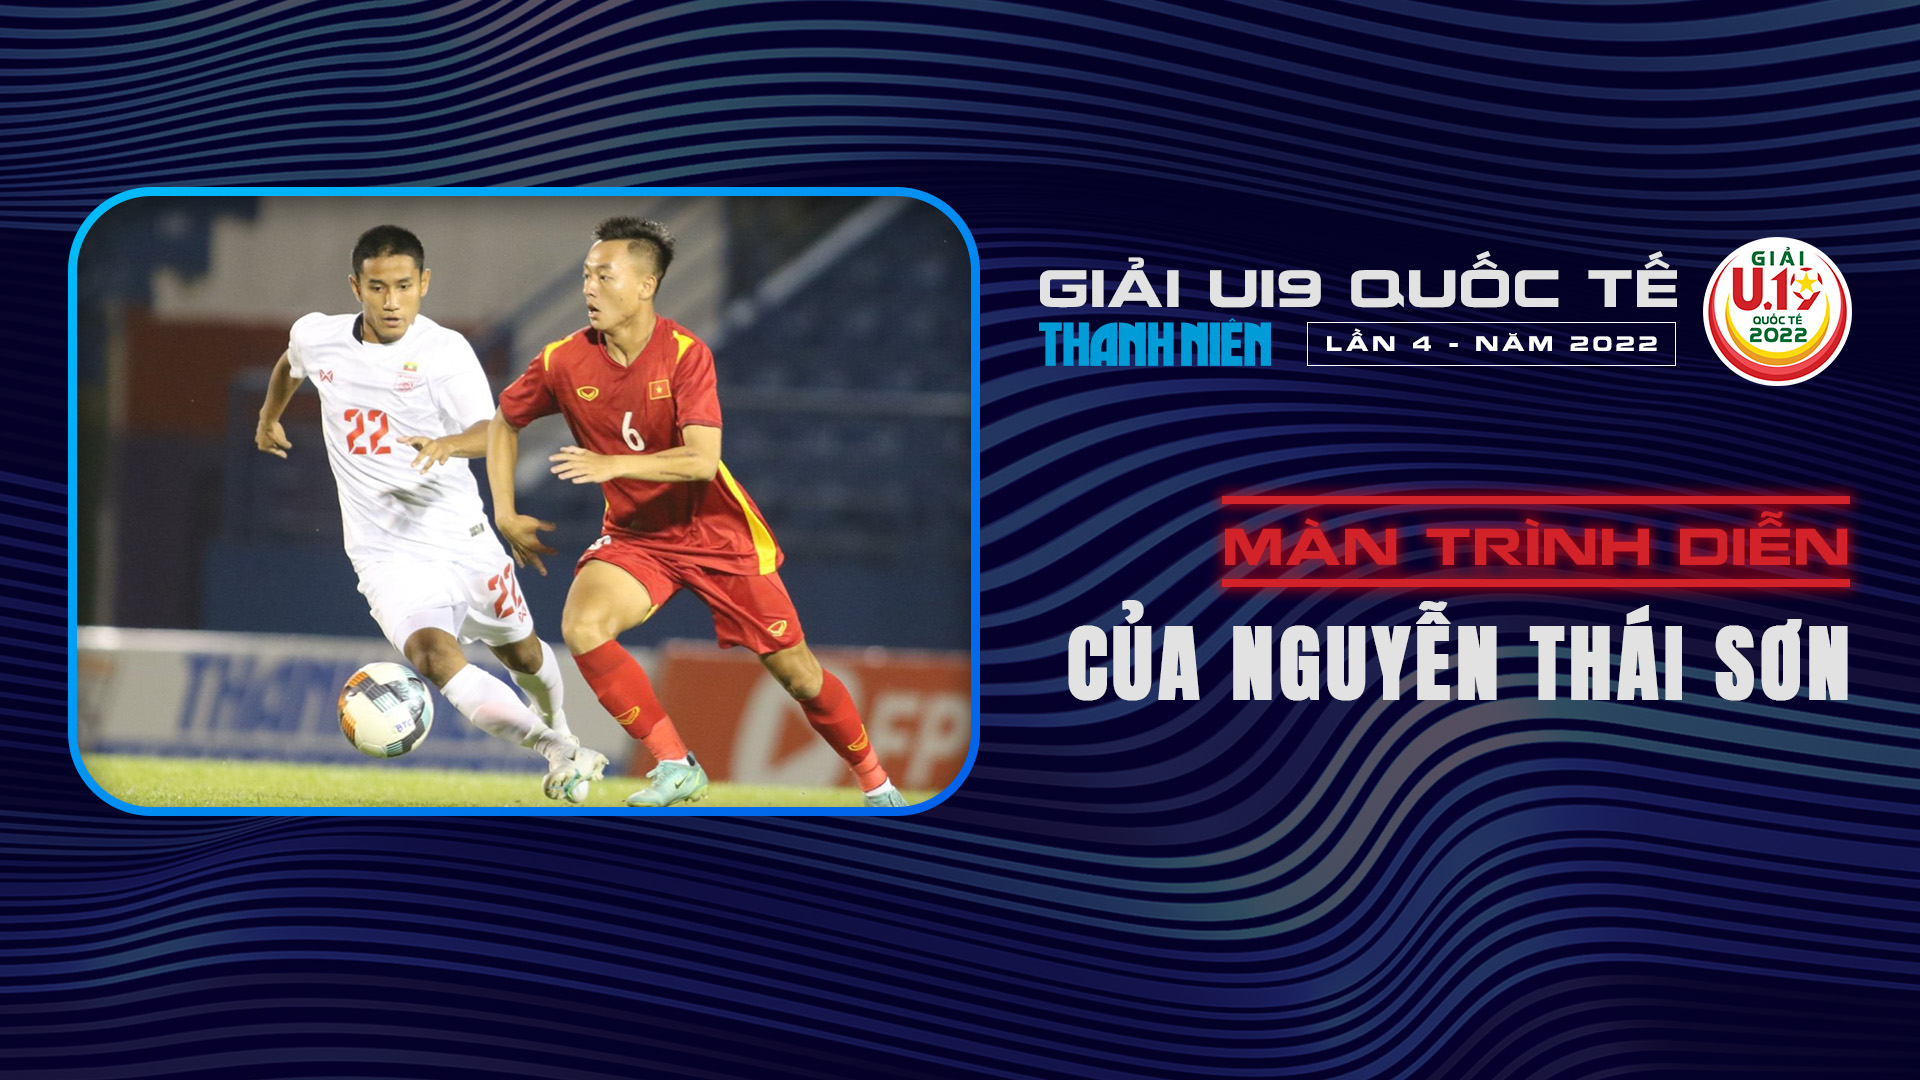 Màn trình diễn của Nguyễn Thái Sơn tại U19 Quốc tế 2022 - U19 Quốc tế